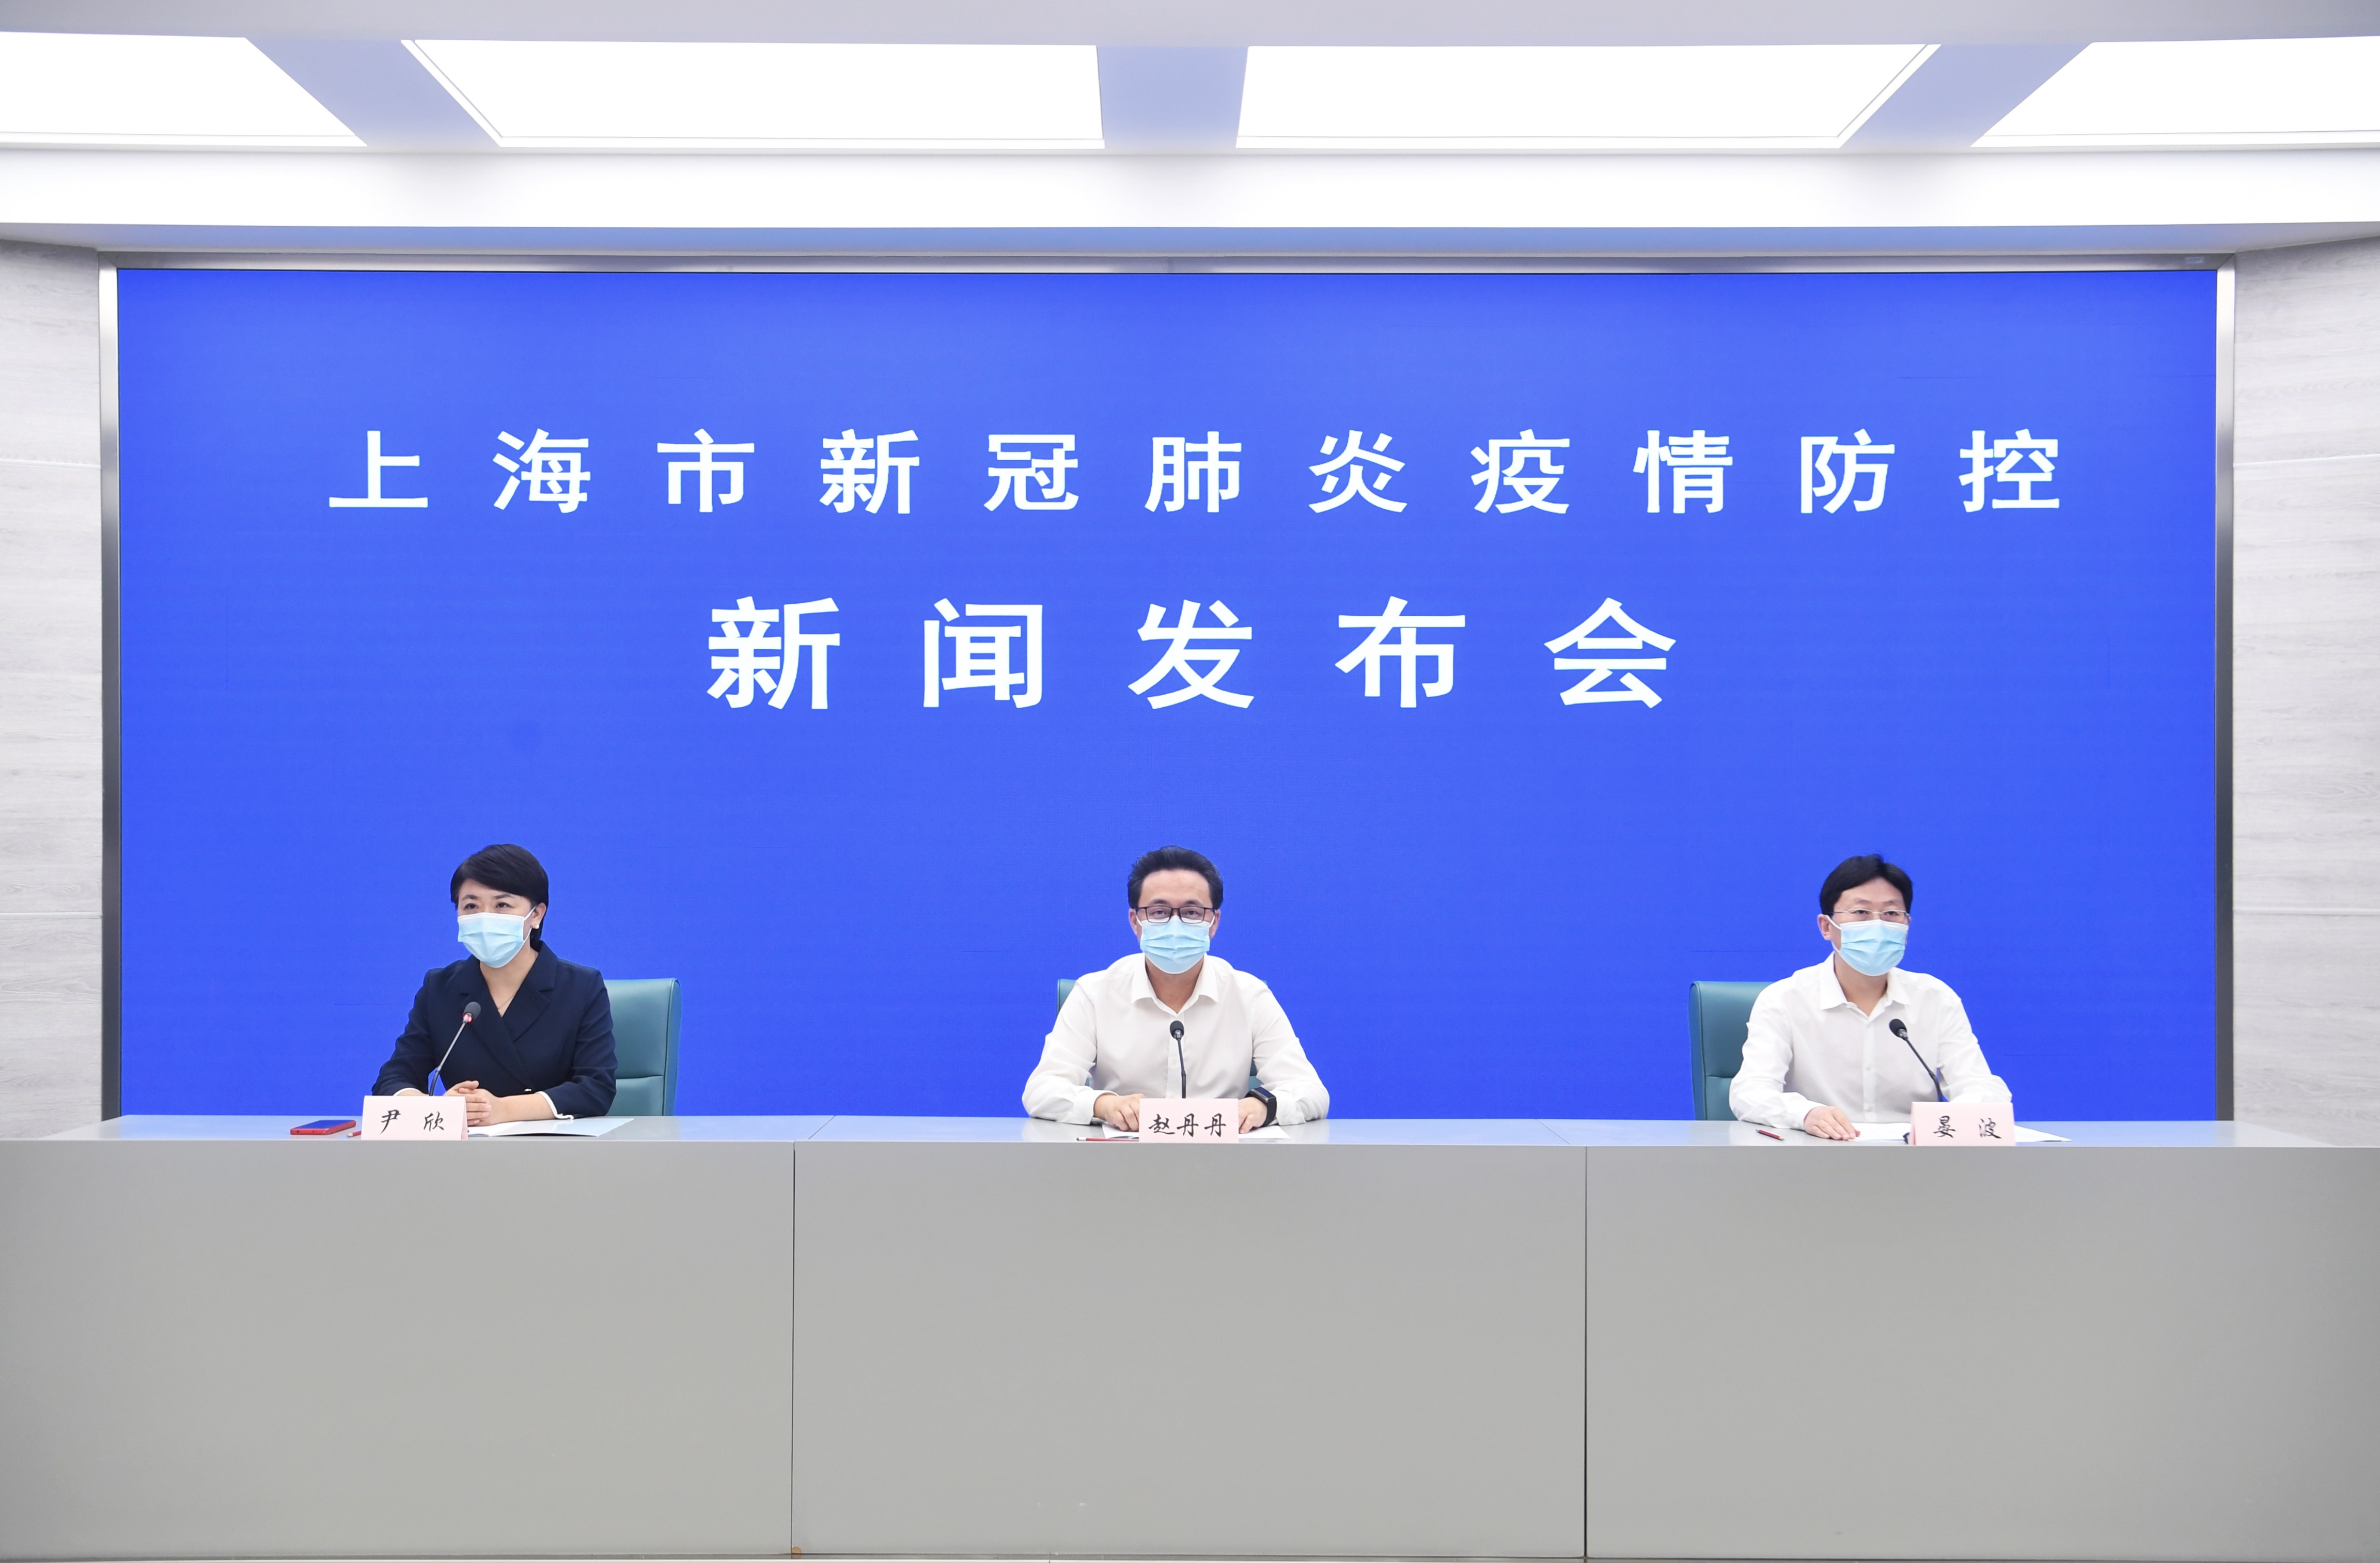 8月24日上海通报新冠肺炎防控情况